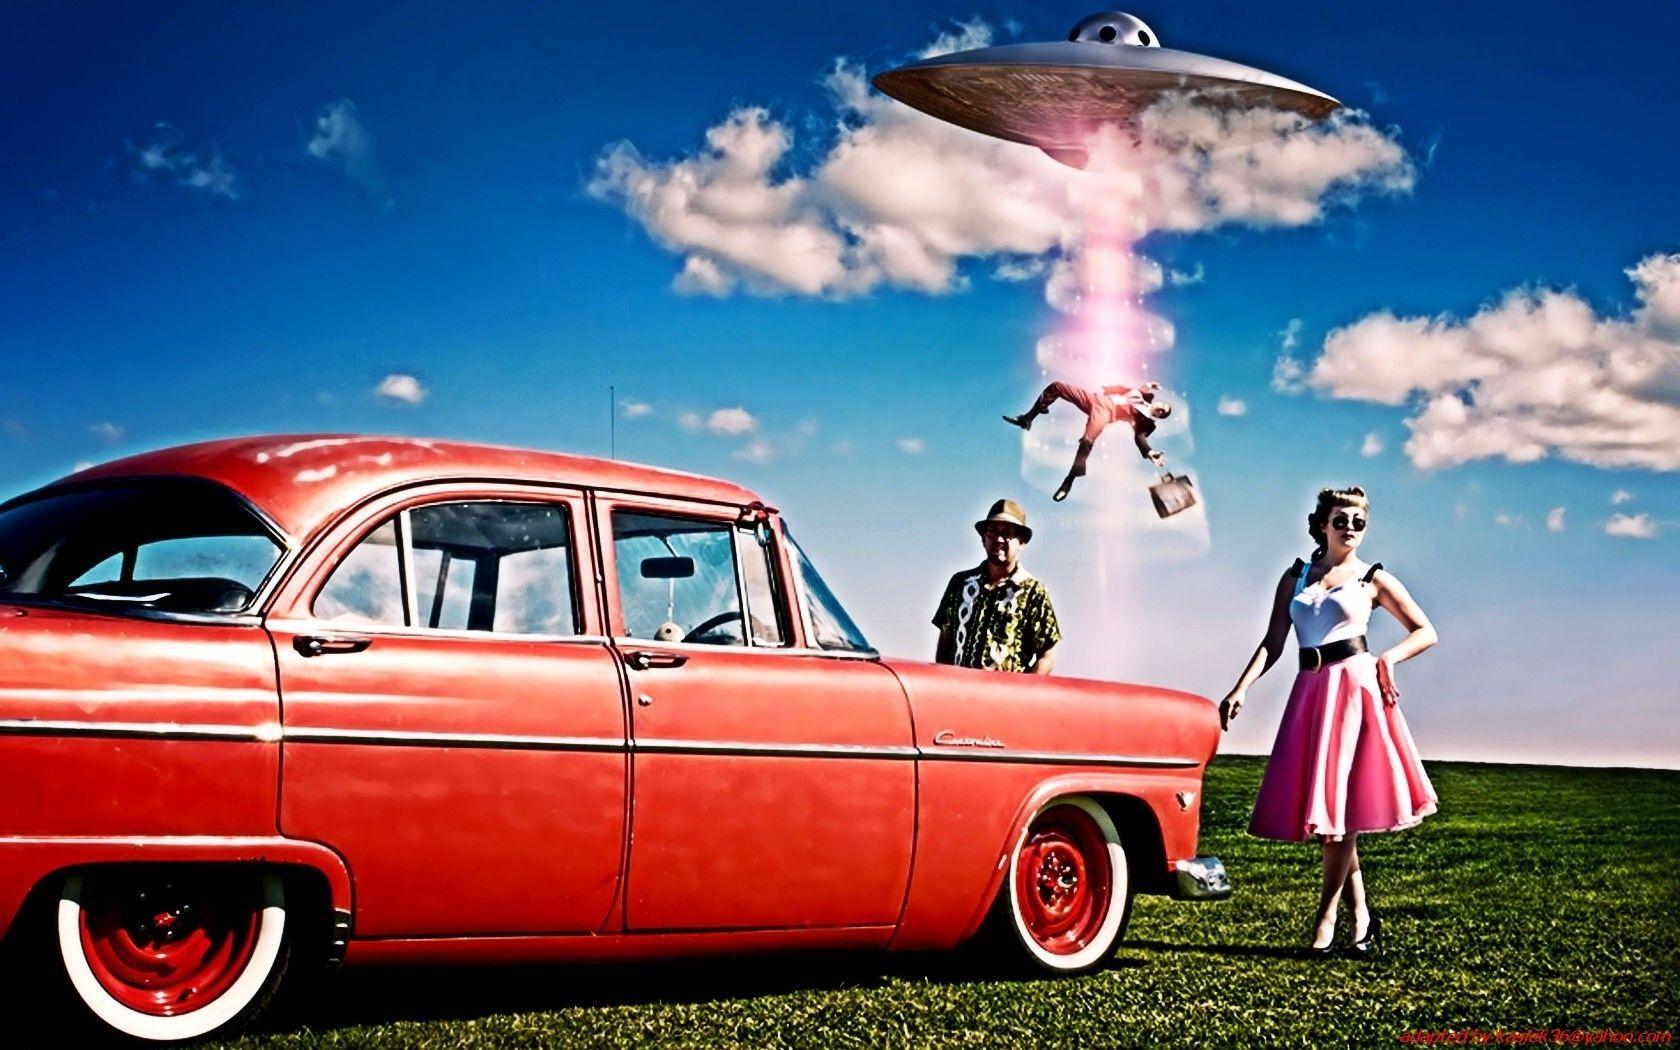 1680x1050 Retro cổ điển quảng cáo khoa học viễn tưởng hài hước ufo người ngoài hành tinh phụ nữ đàn ông hình nền.  1680x1050